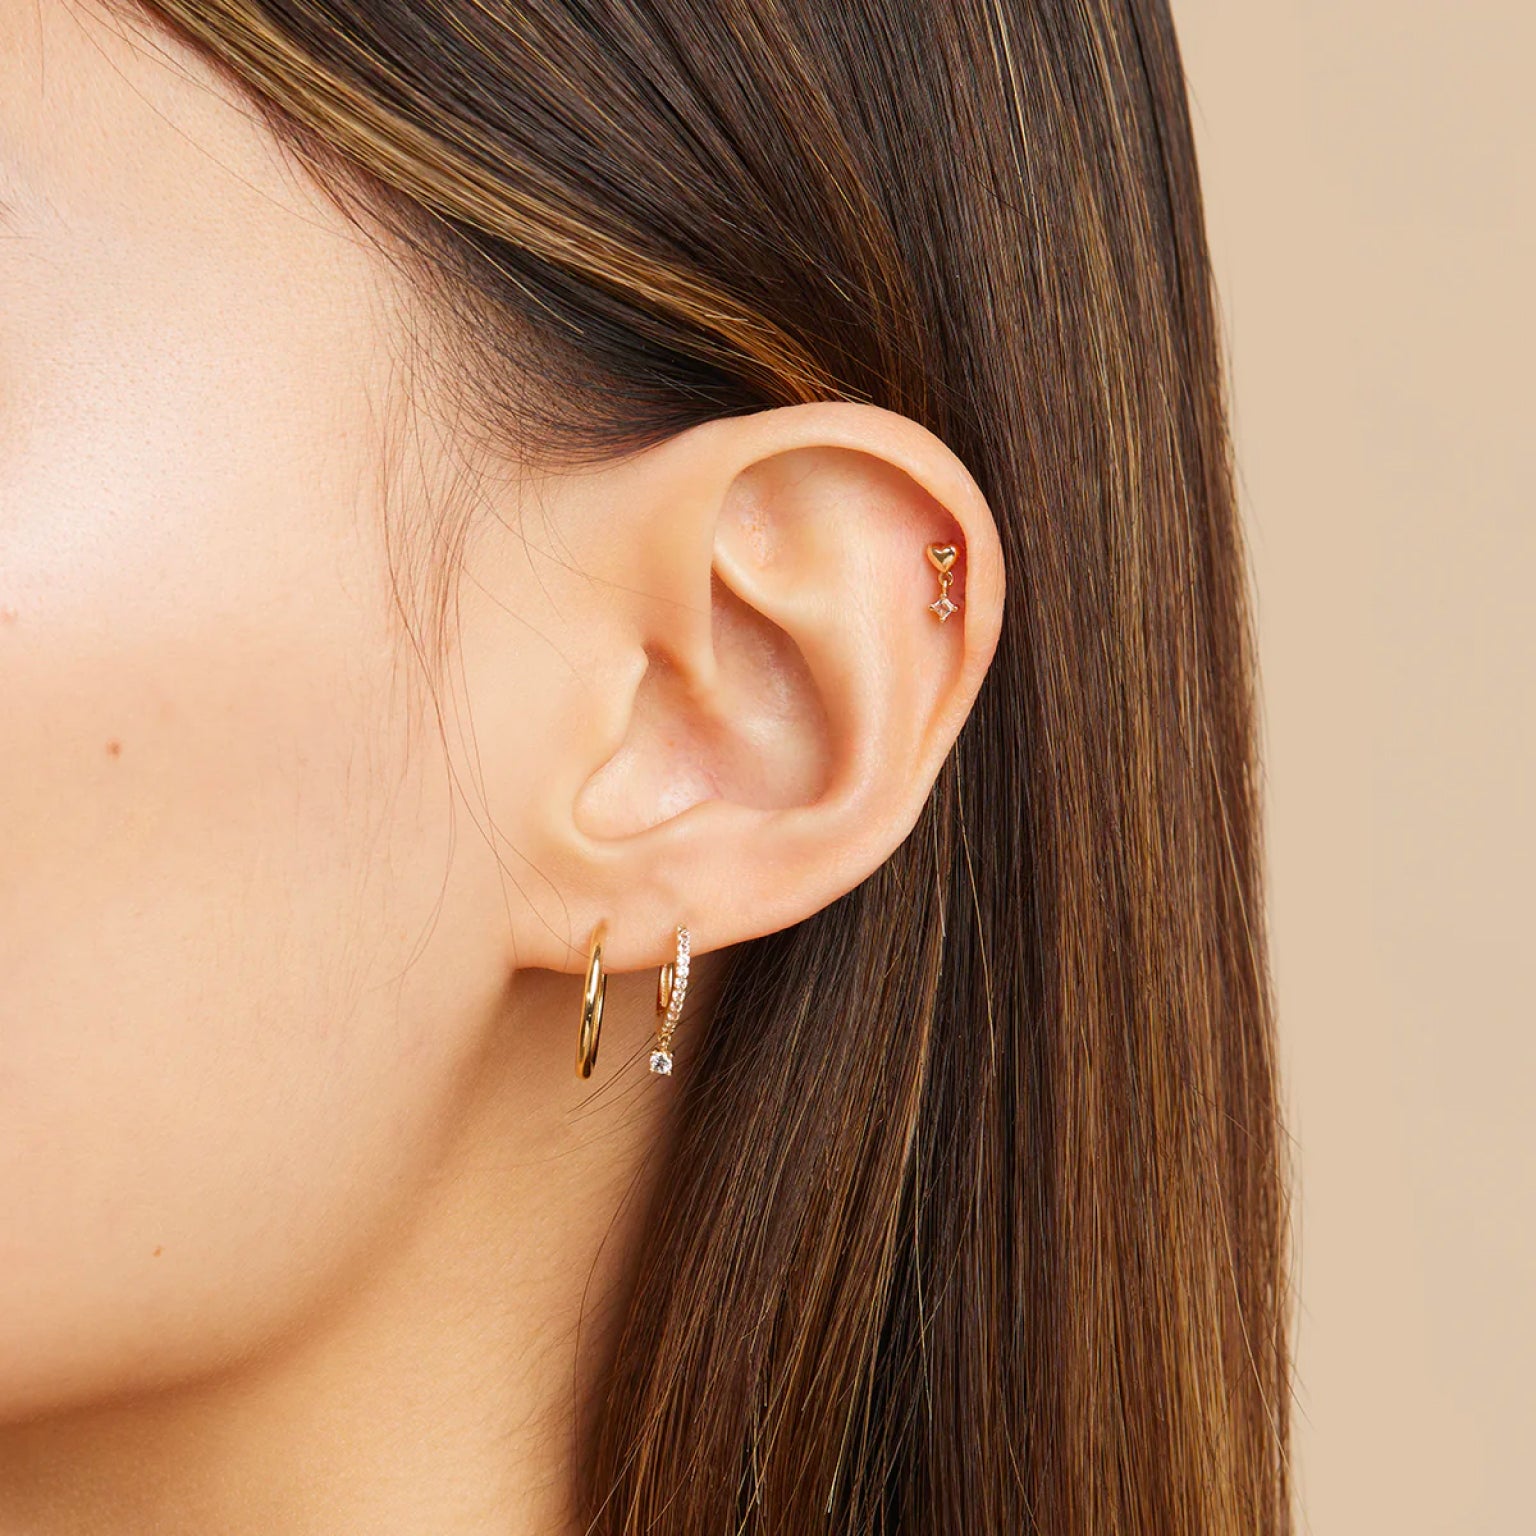 The Best Helix Piercing Jewellery & Earrings